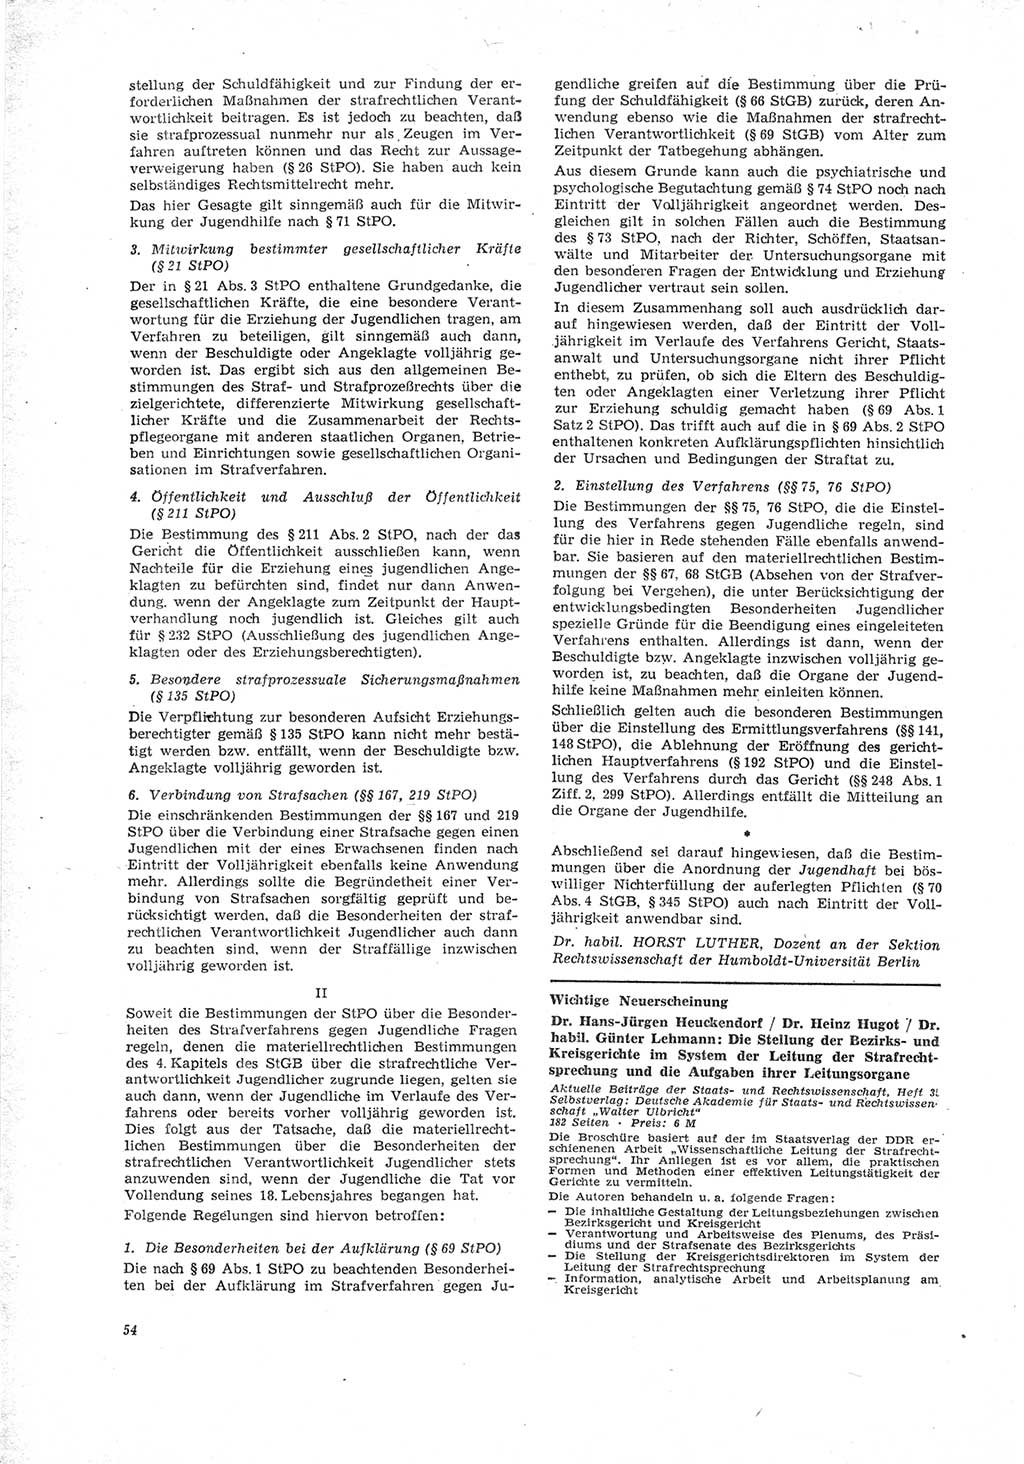 Neue Justiz (NJ), Zeitschrift für Recht und Rechtswissenschaft [Deutsche Demokratische Republik (DDR)], 23. Jahrgang 1969, Seite 54 (NJ DDR 1969, S. 54)